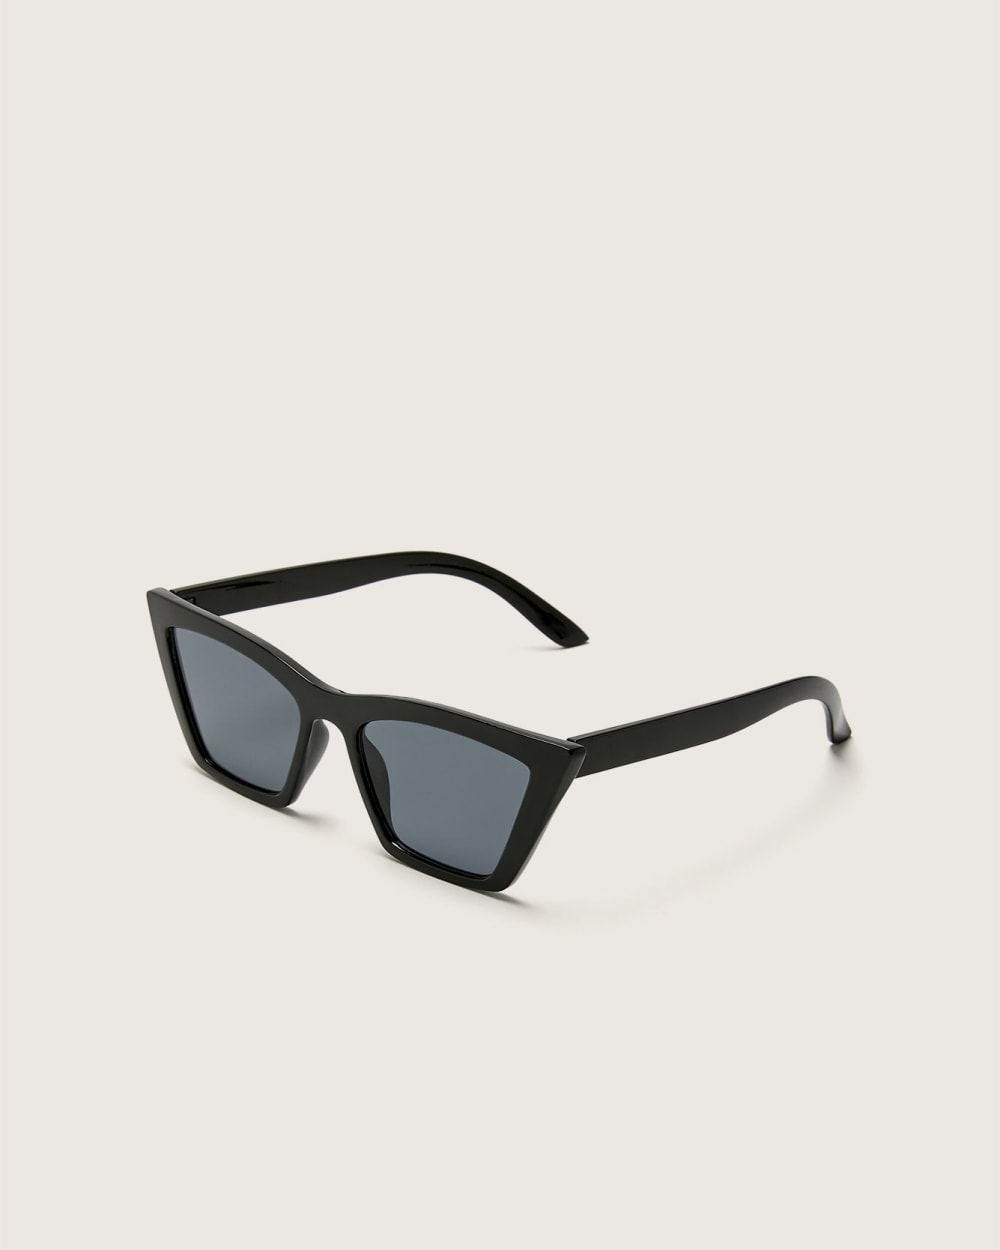 Cat-Eye Plastic Sunglasses